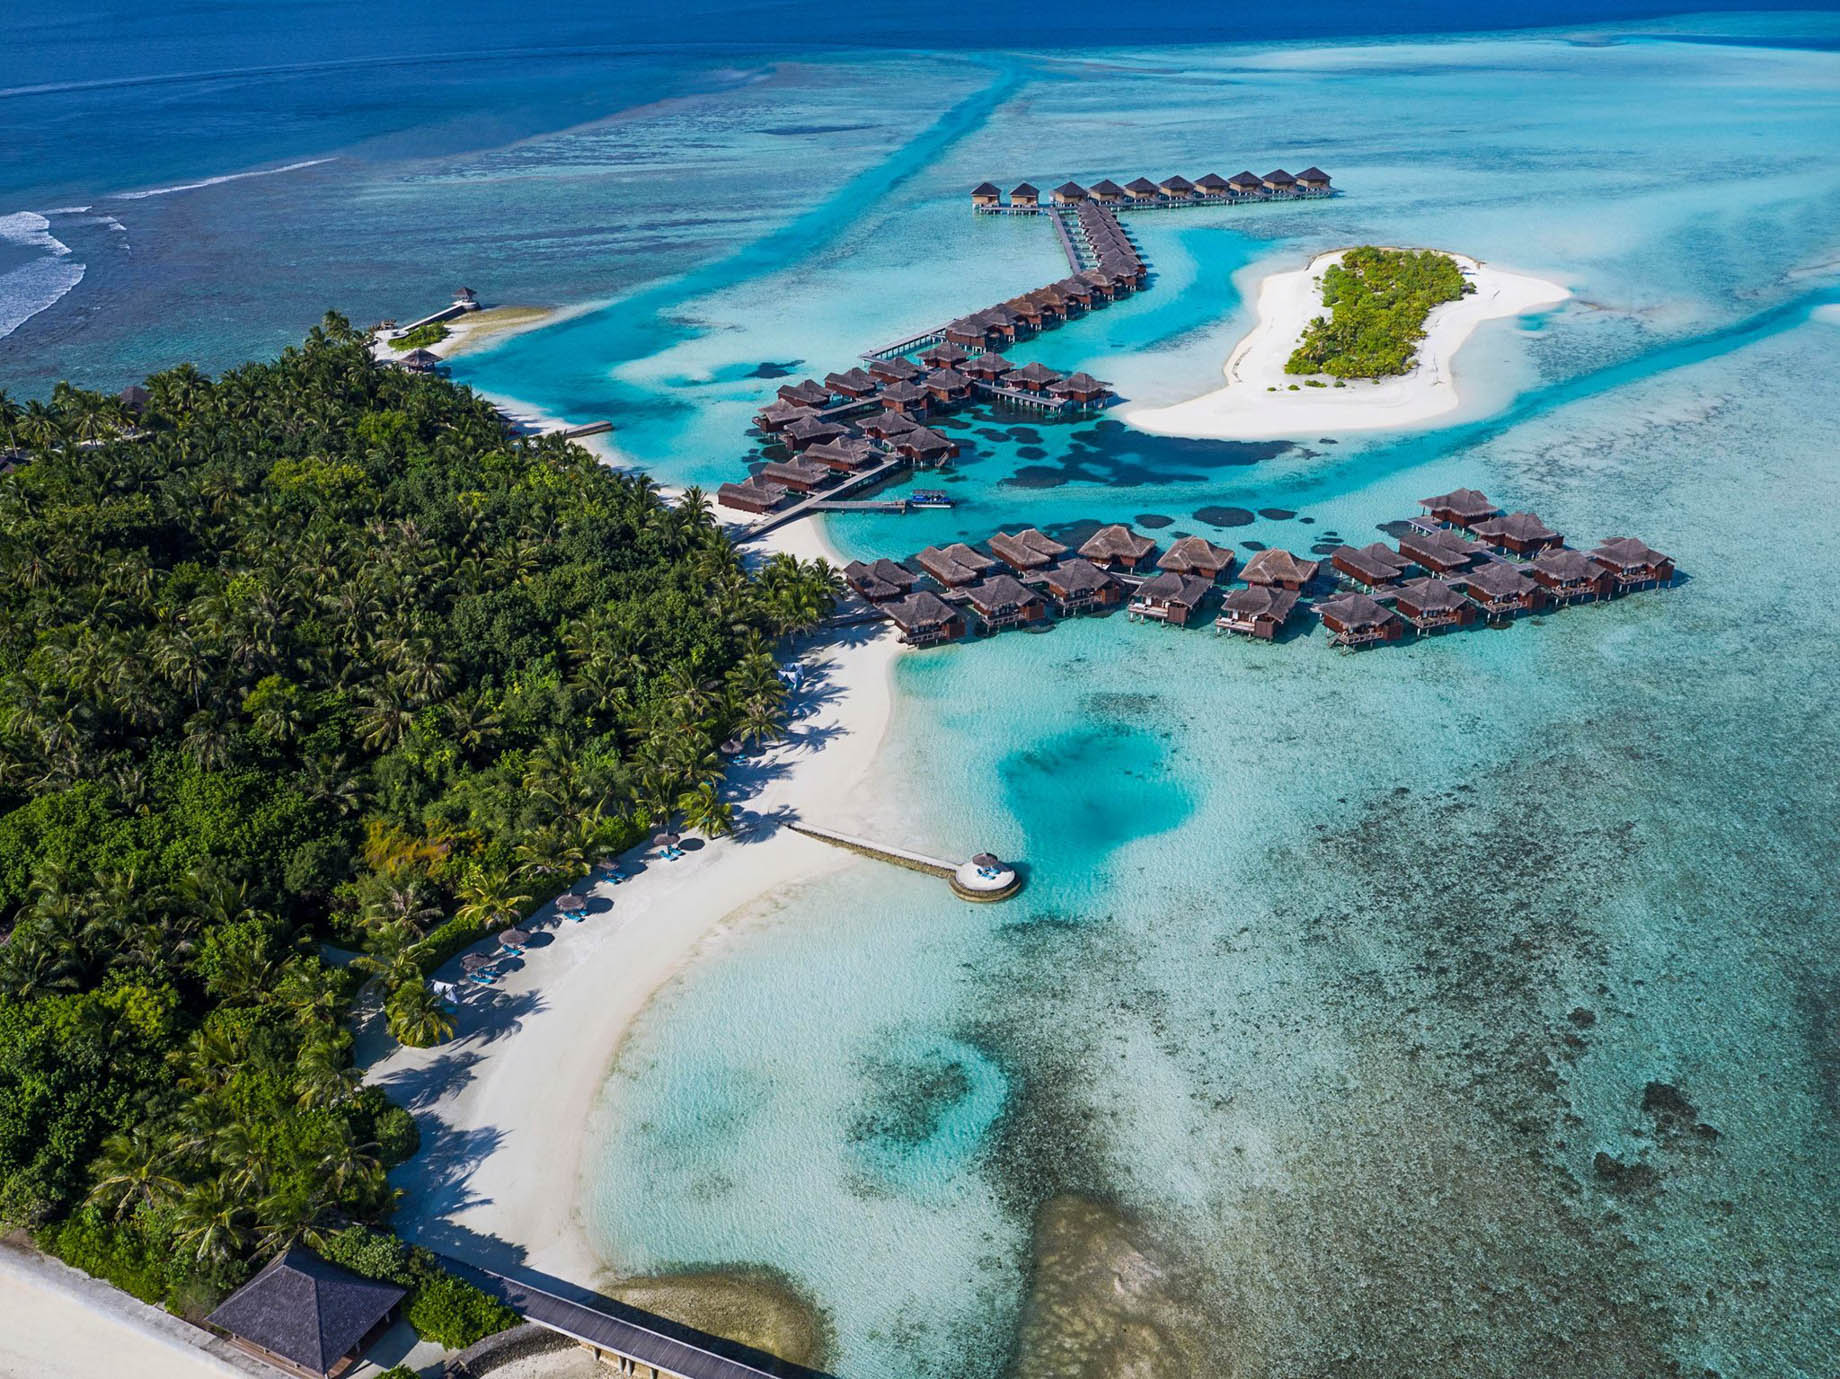 Anantara Veli Maldives Resort – South Male Atoll, Maldives – Resort Aerial View